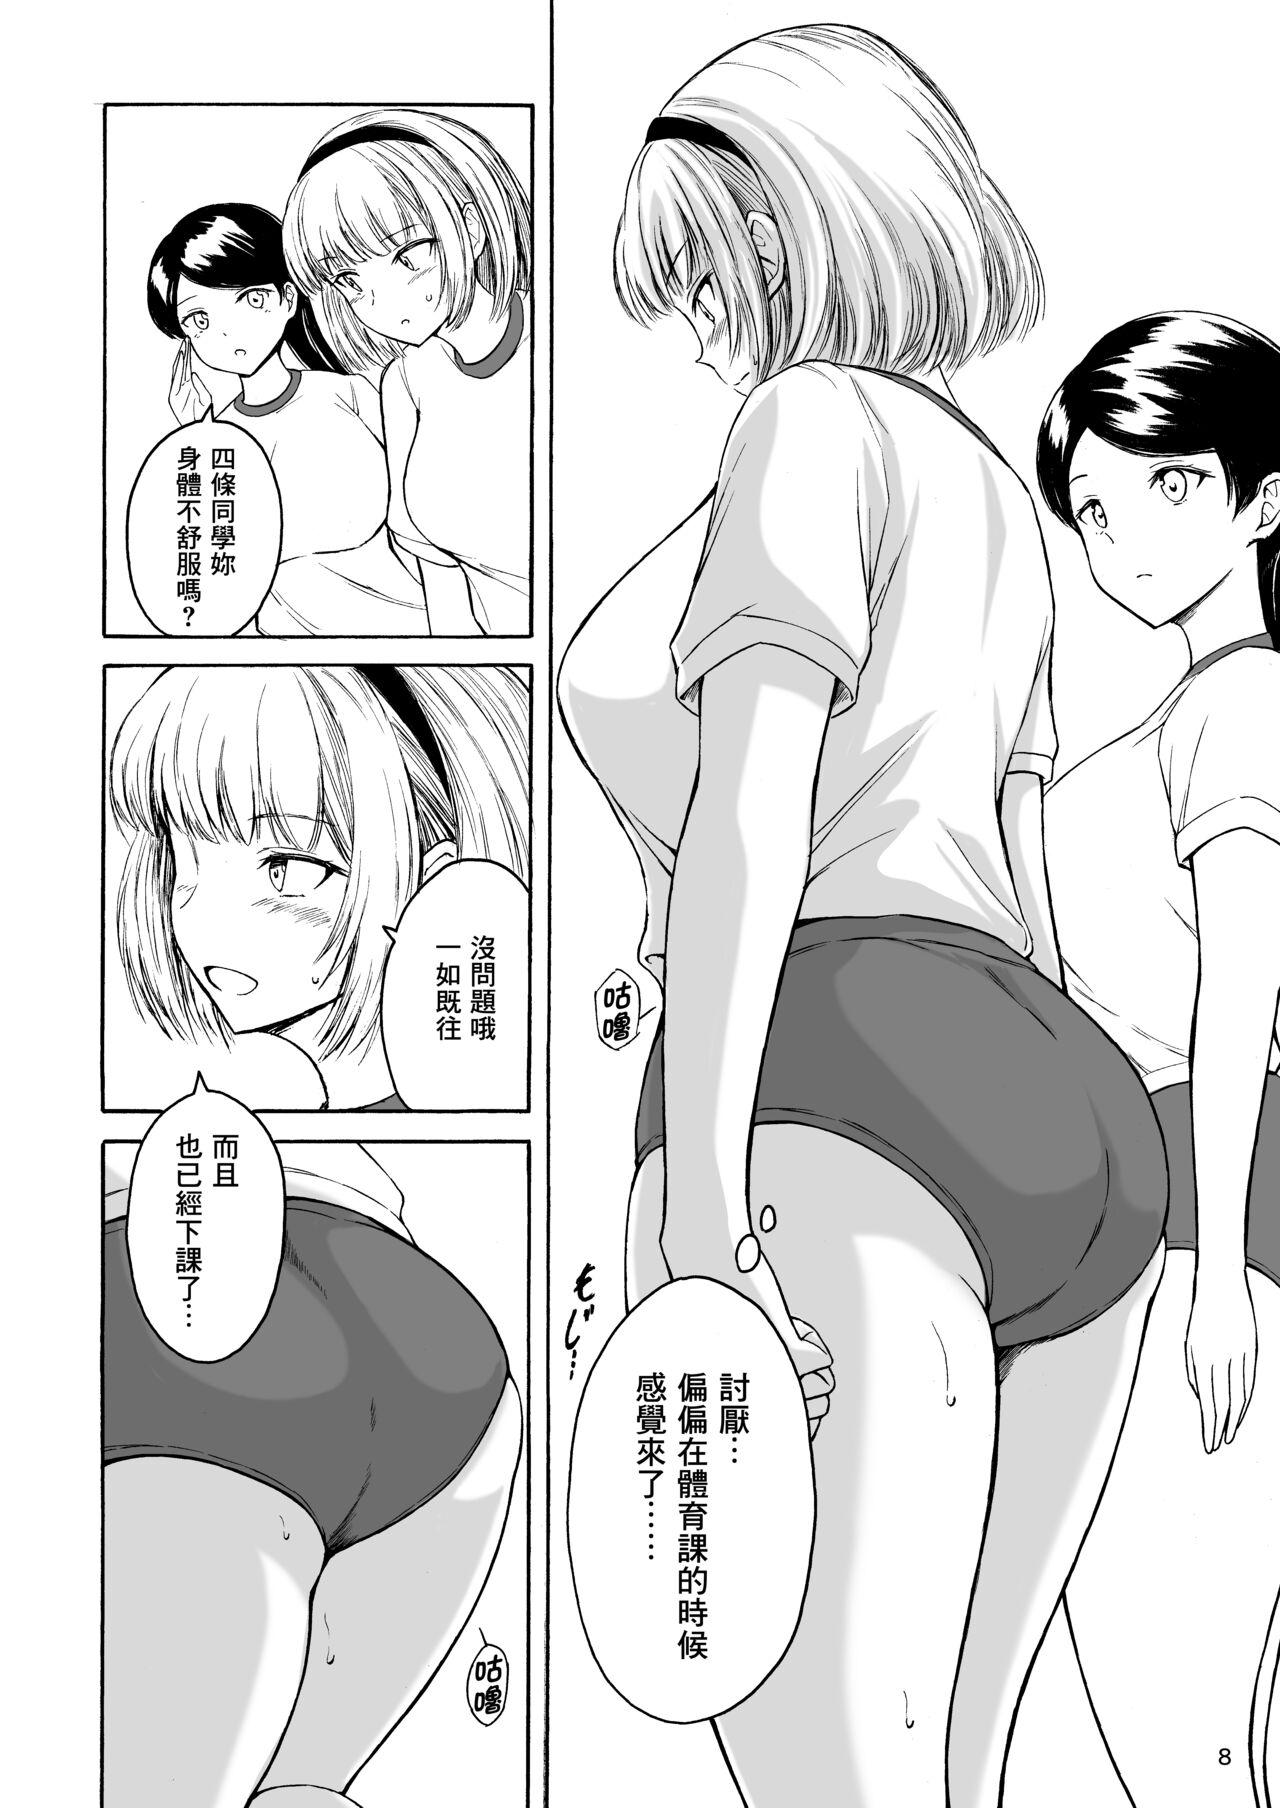 Mamando Haisetsu Shoujo 15 - Original Shemale Porn - Page 8